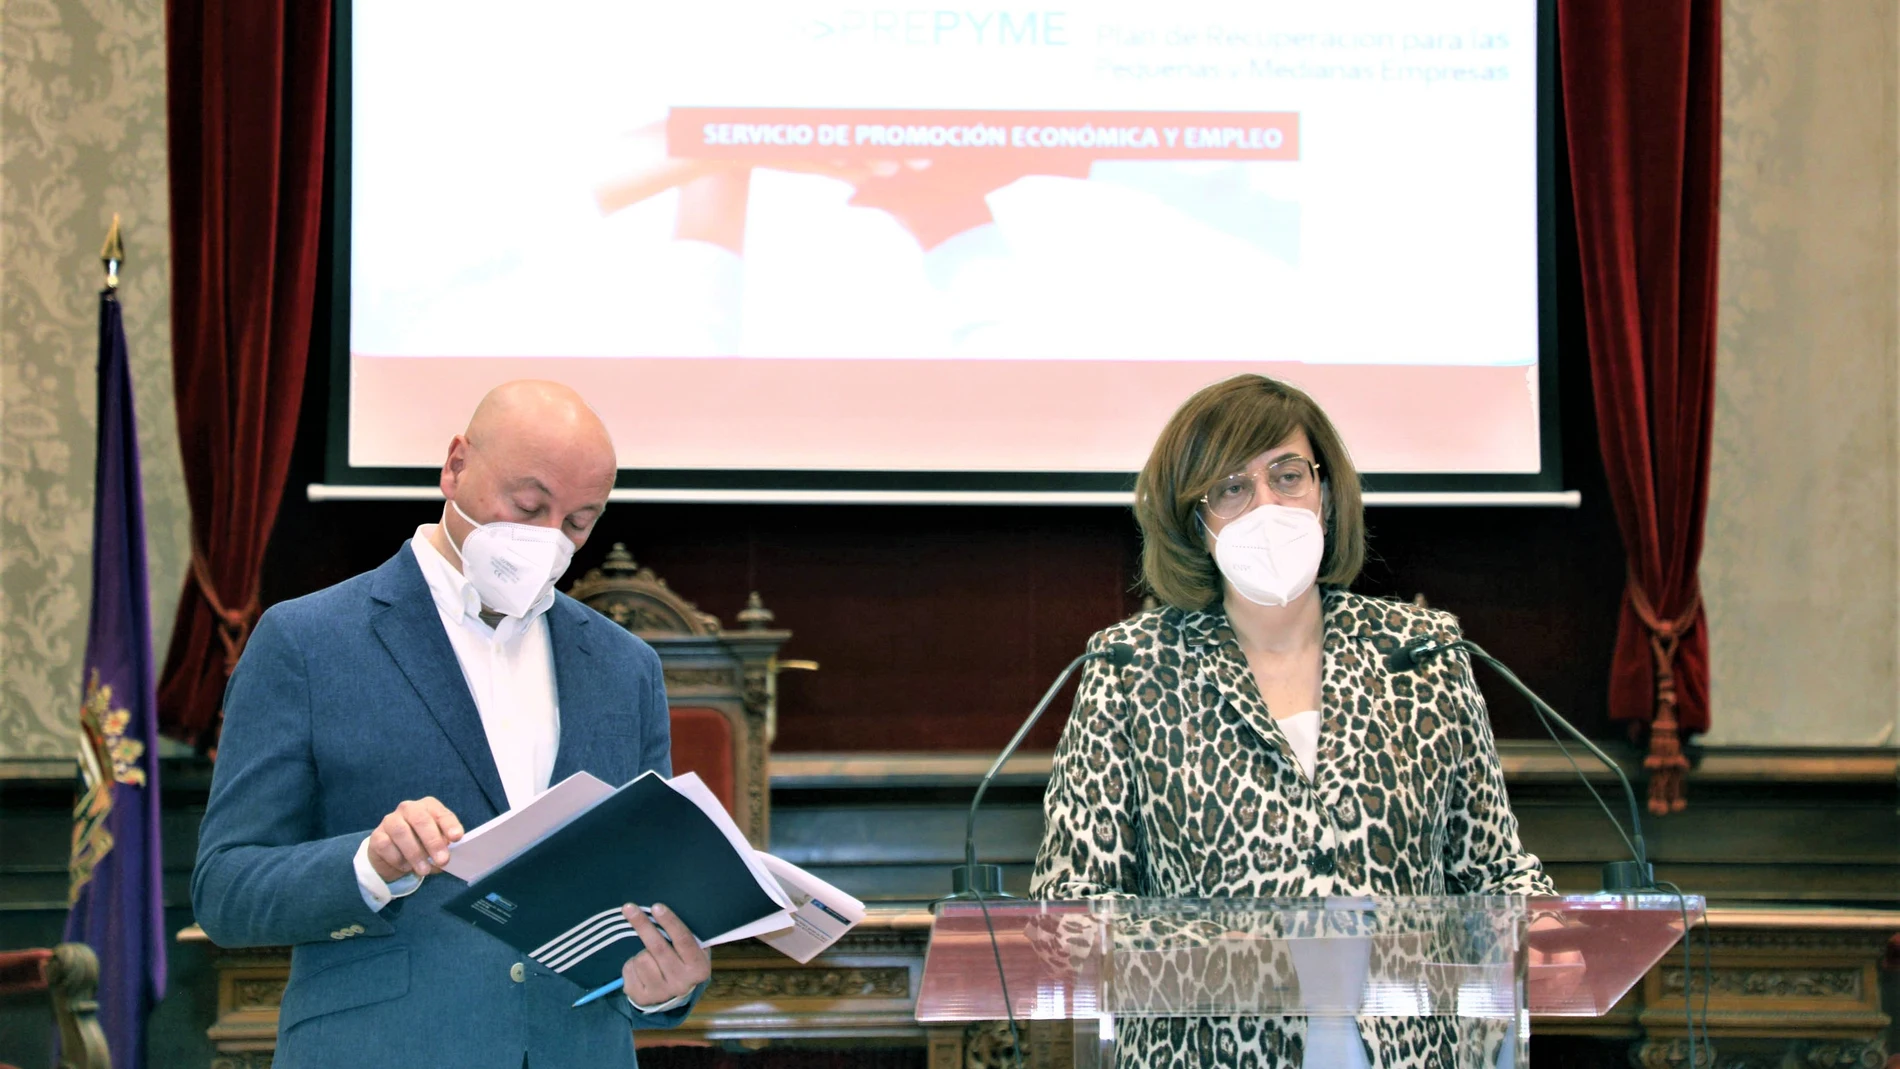 La presidenta de la Diputación de Palencia, Ángeles Armisén, y el vicepresidente Luis Calderón presentan el Plan de Recuperación para Pequeñas y Medianas Empresa